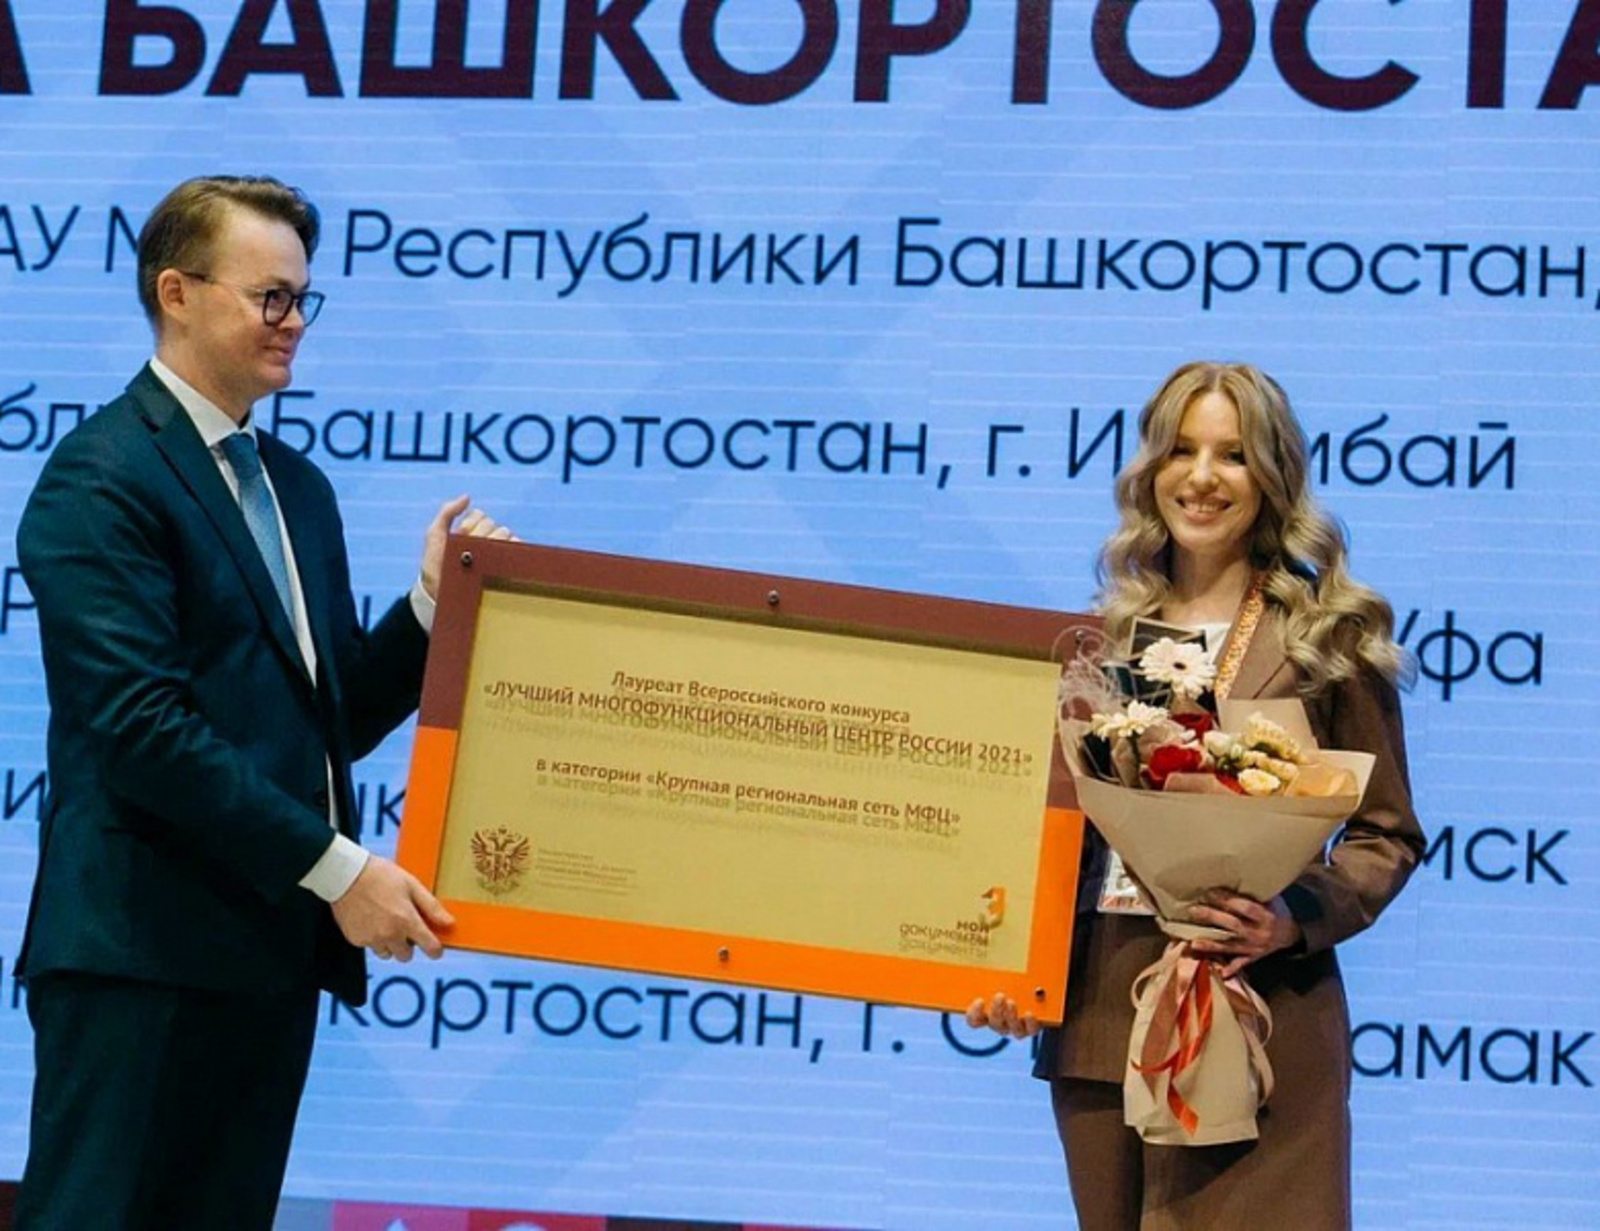 МФЦ Республики Башкортостан признан лучшей крупной региональной сетью вРоссии